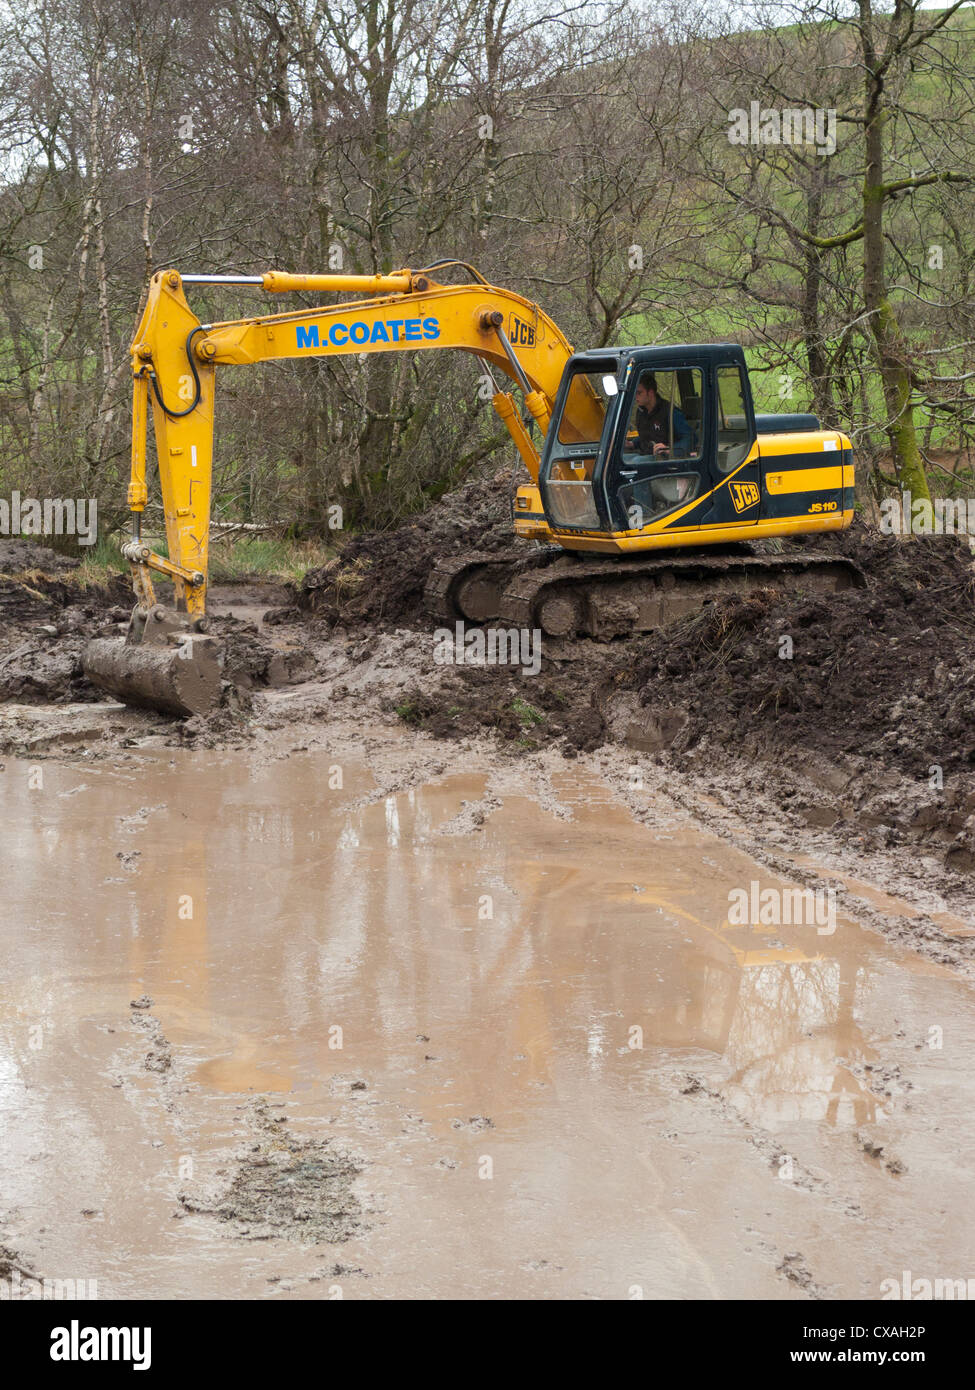 Contratista con una excavadora 360grados cavar un estanque de vida silvestre en una granja. Powys, Gales. Abril Foto de stock